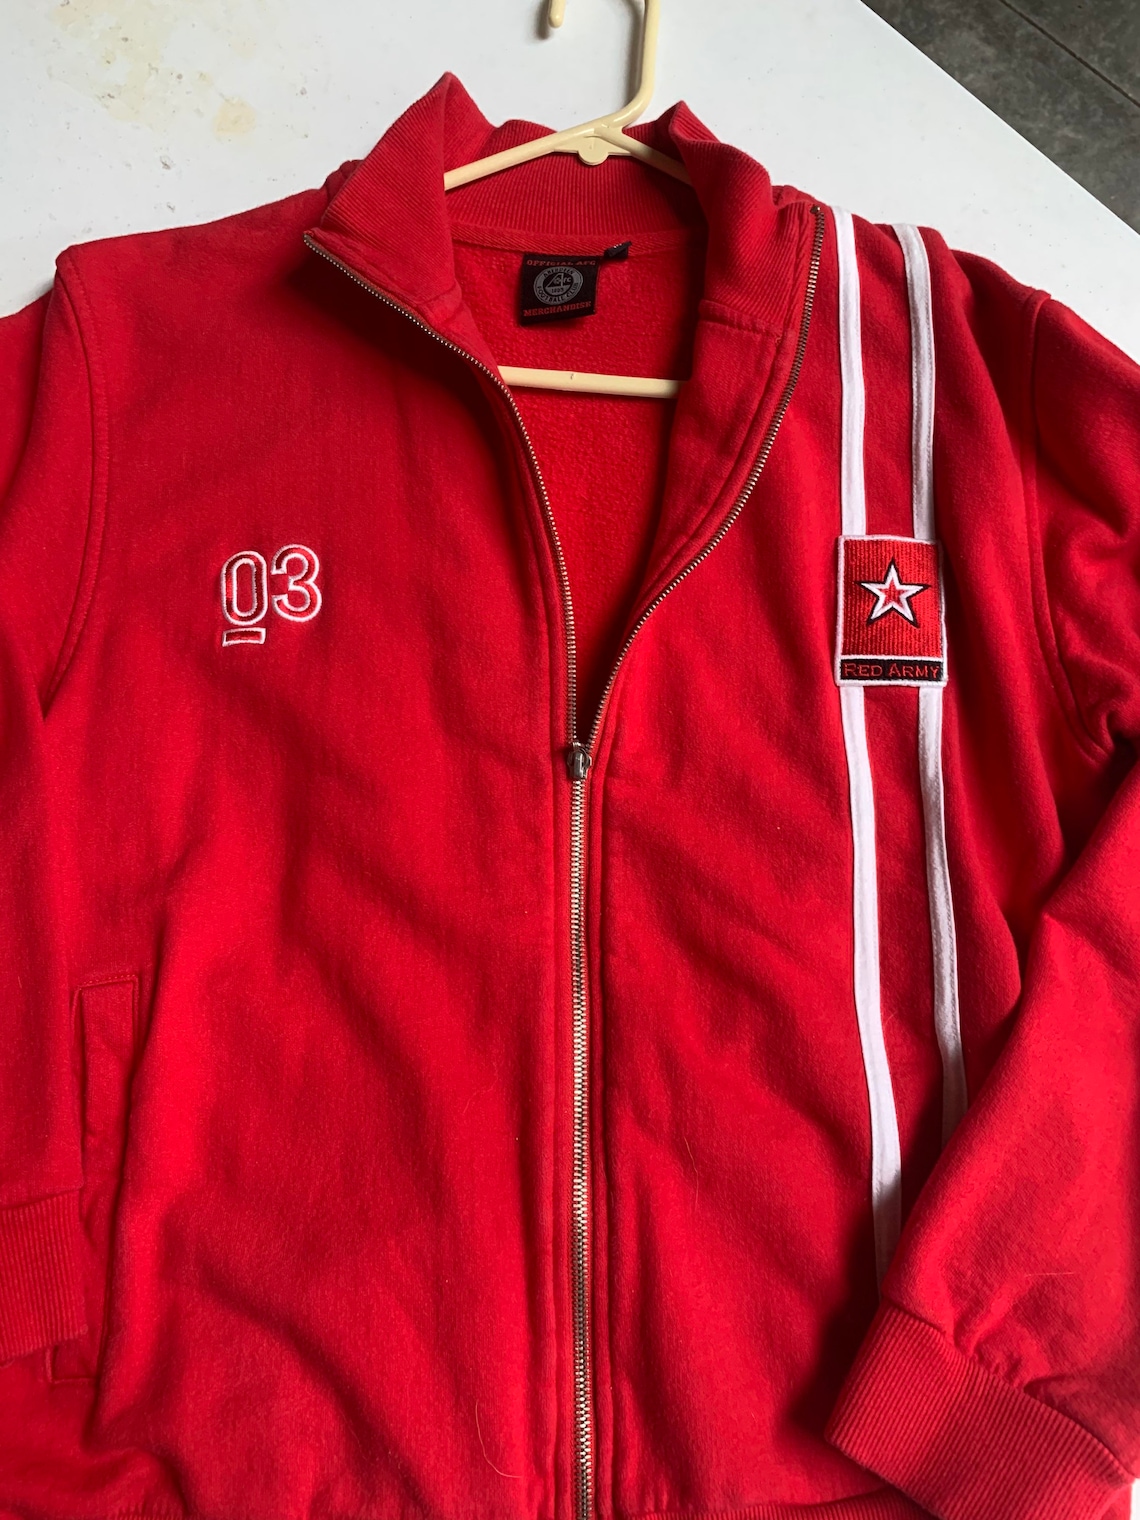 Vintage Aberdeen Football Club Full Zip Jacket Size Medium Red - Etsy